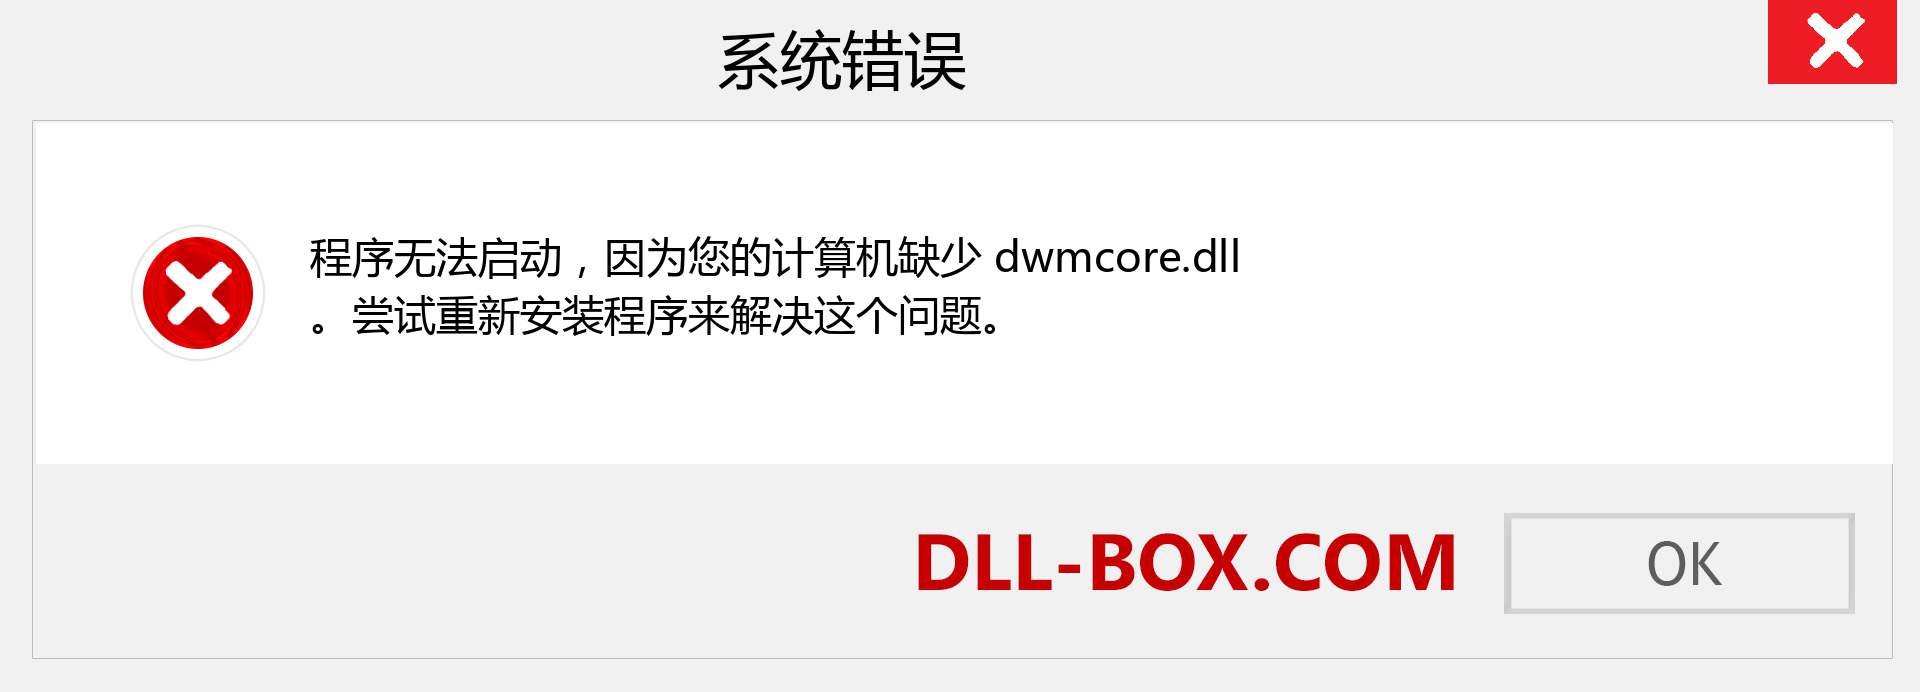 dwmcore.dll 文件丢失？。 适用于 Windows 7、8、10 的下载 - 修复 Windows、照片、图像上的 dwmcore dll 丢失错误